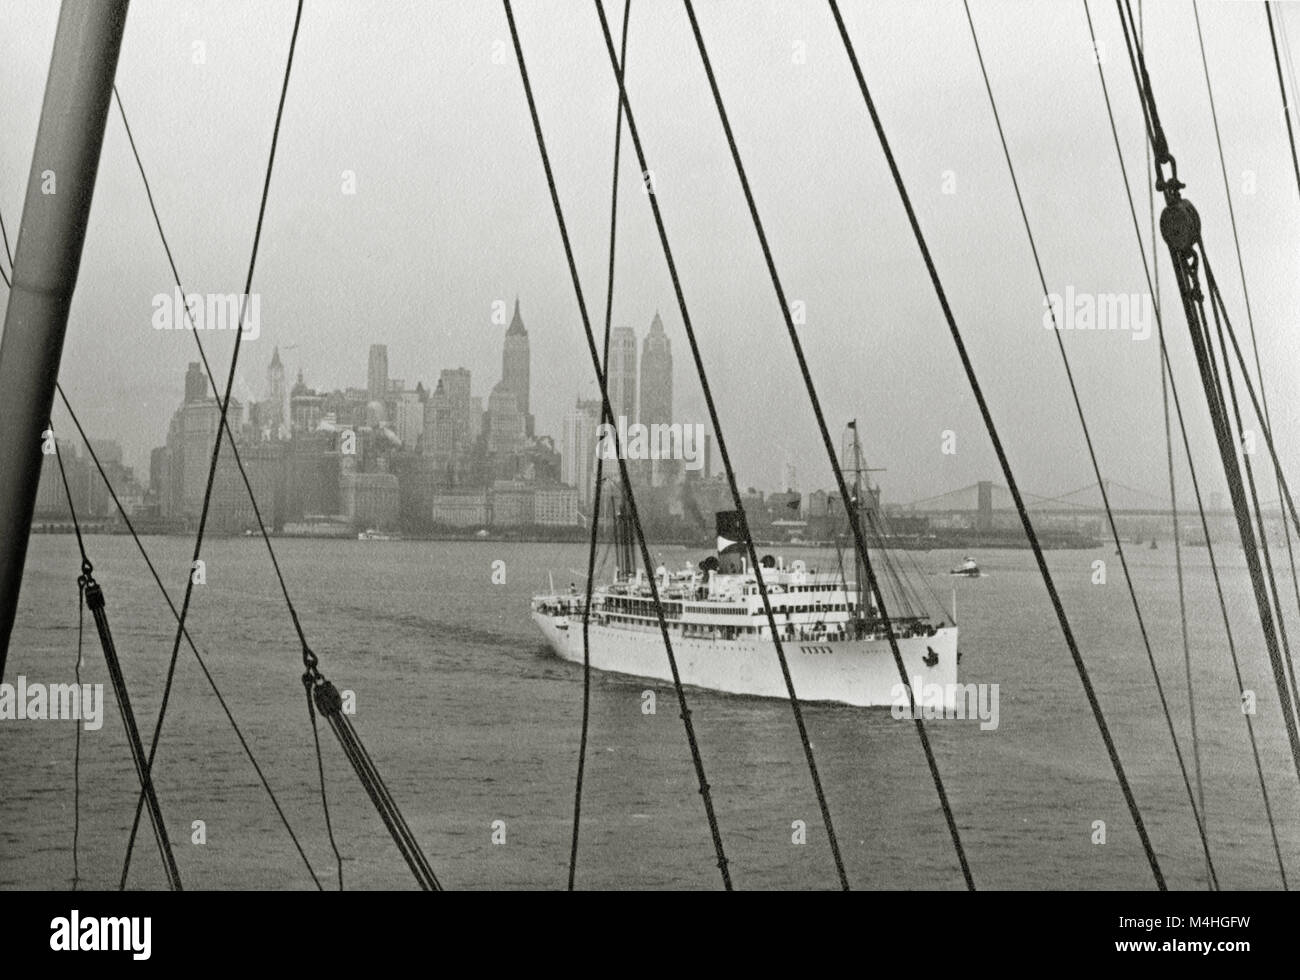 Vue depuis le navire à passagers 'Europa' dans une petite embarcation à vapeur en face de la skyline de Manhattan à New York. Banque D'Images